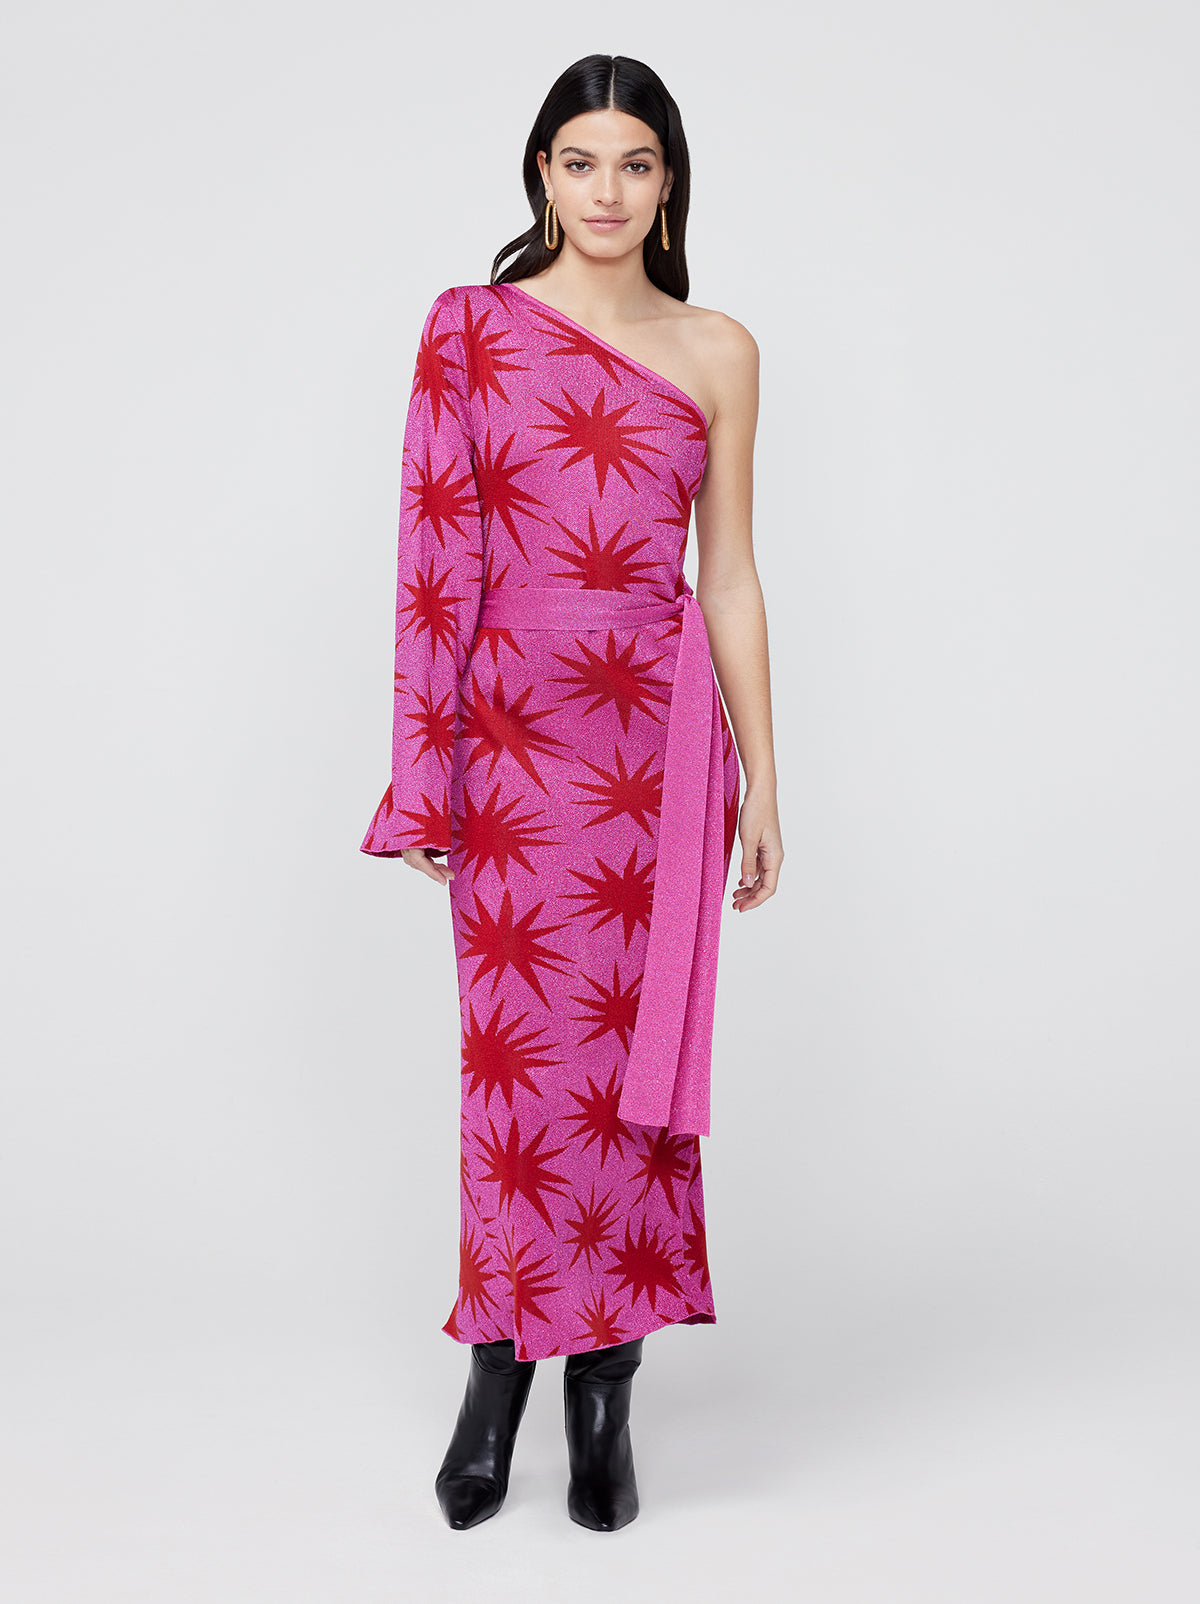 Esme Pink Star Lurex Knit One Shoulder Dress